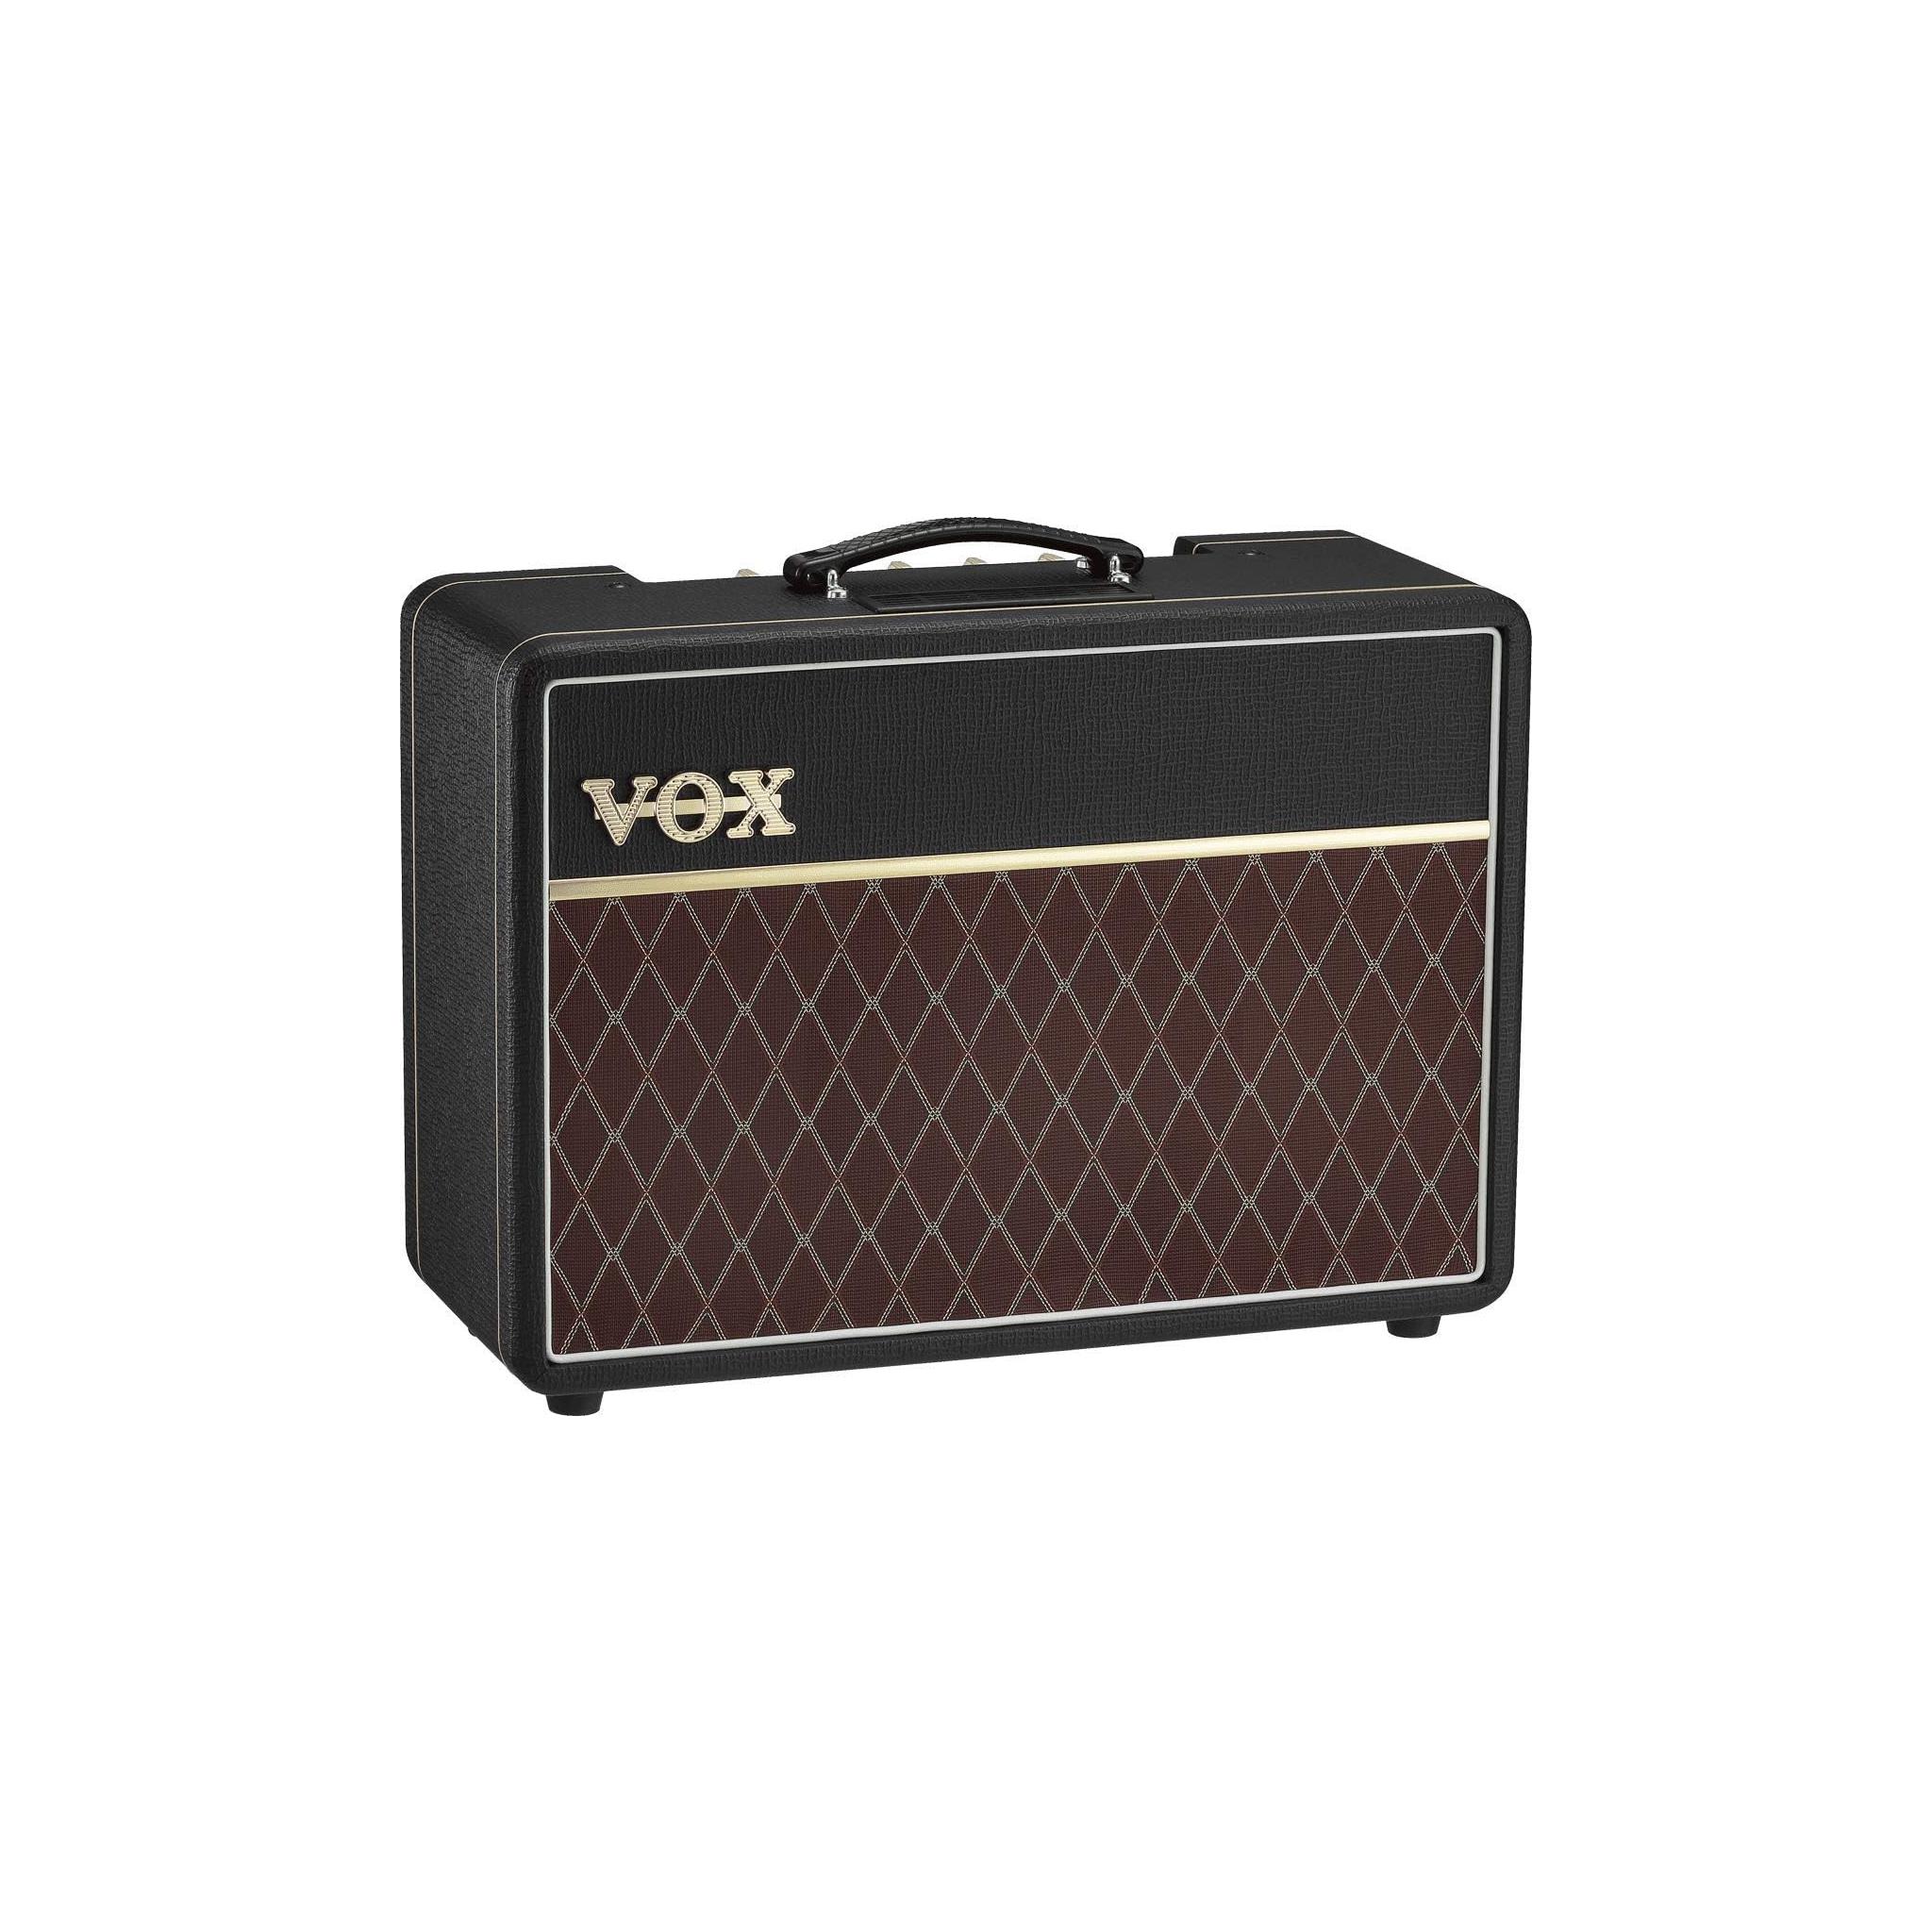 VOX Vox AC10C